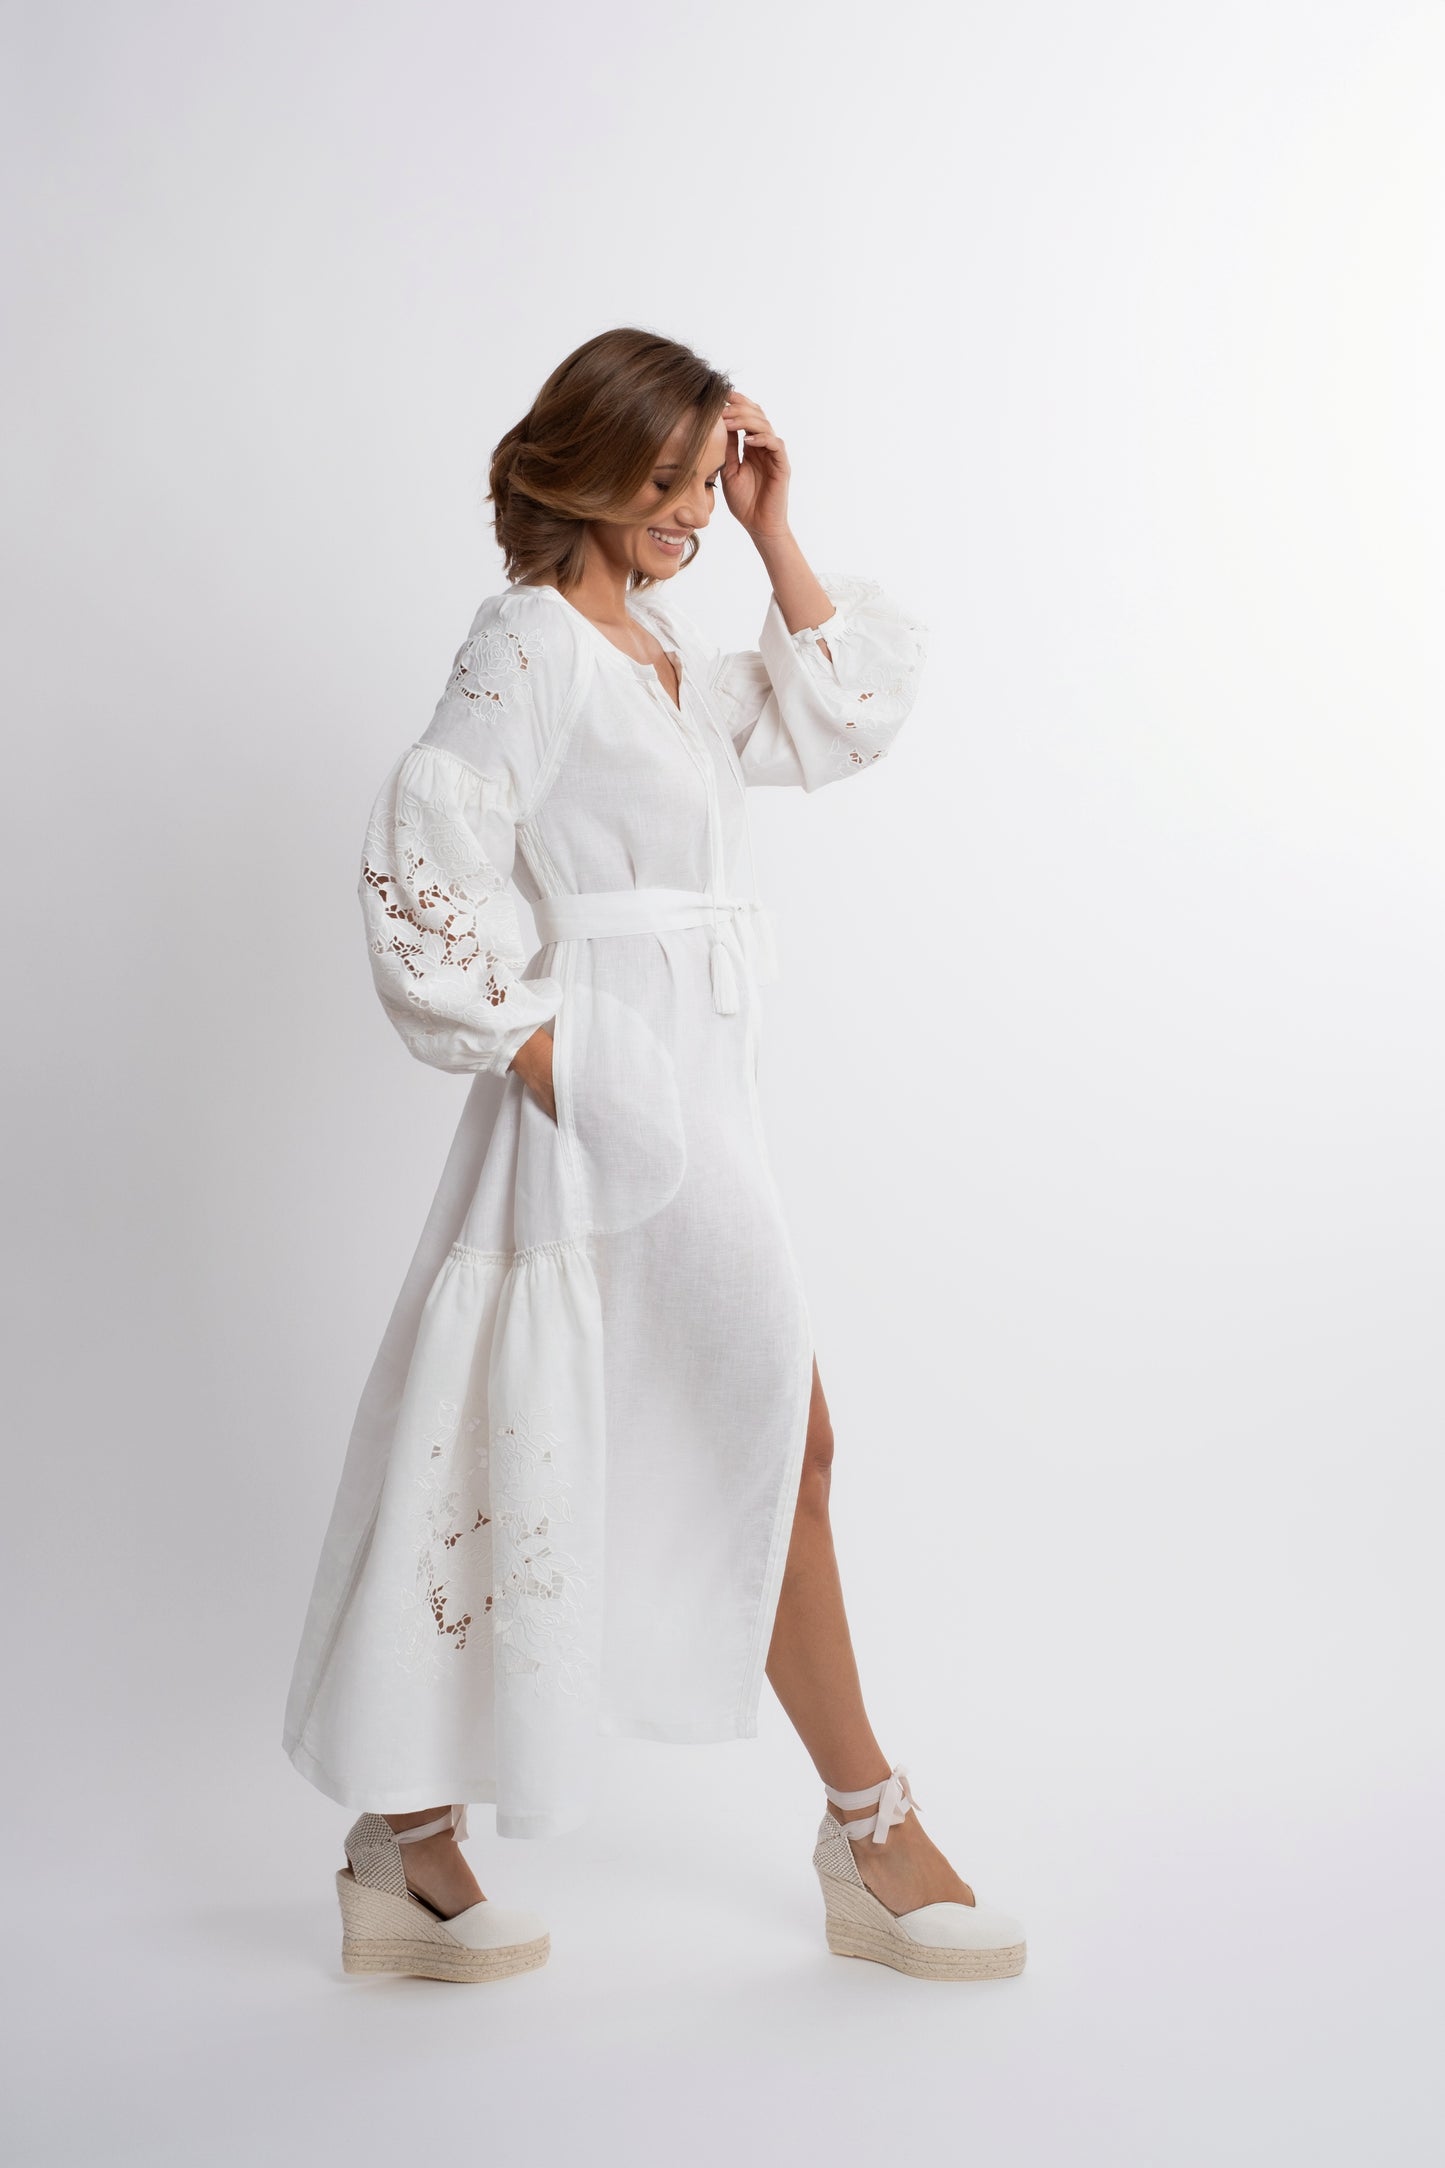 Capri: Vestido de lino blanco con cinturón, bordado suizo con pompones y botones de nácar.